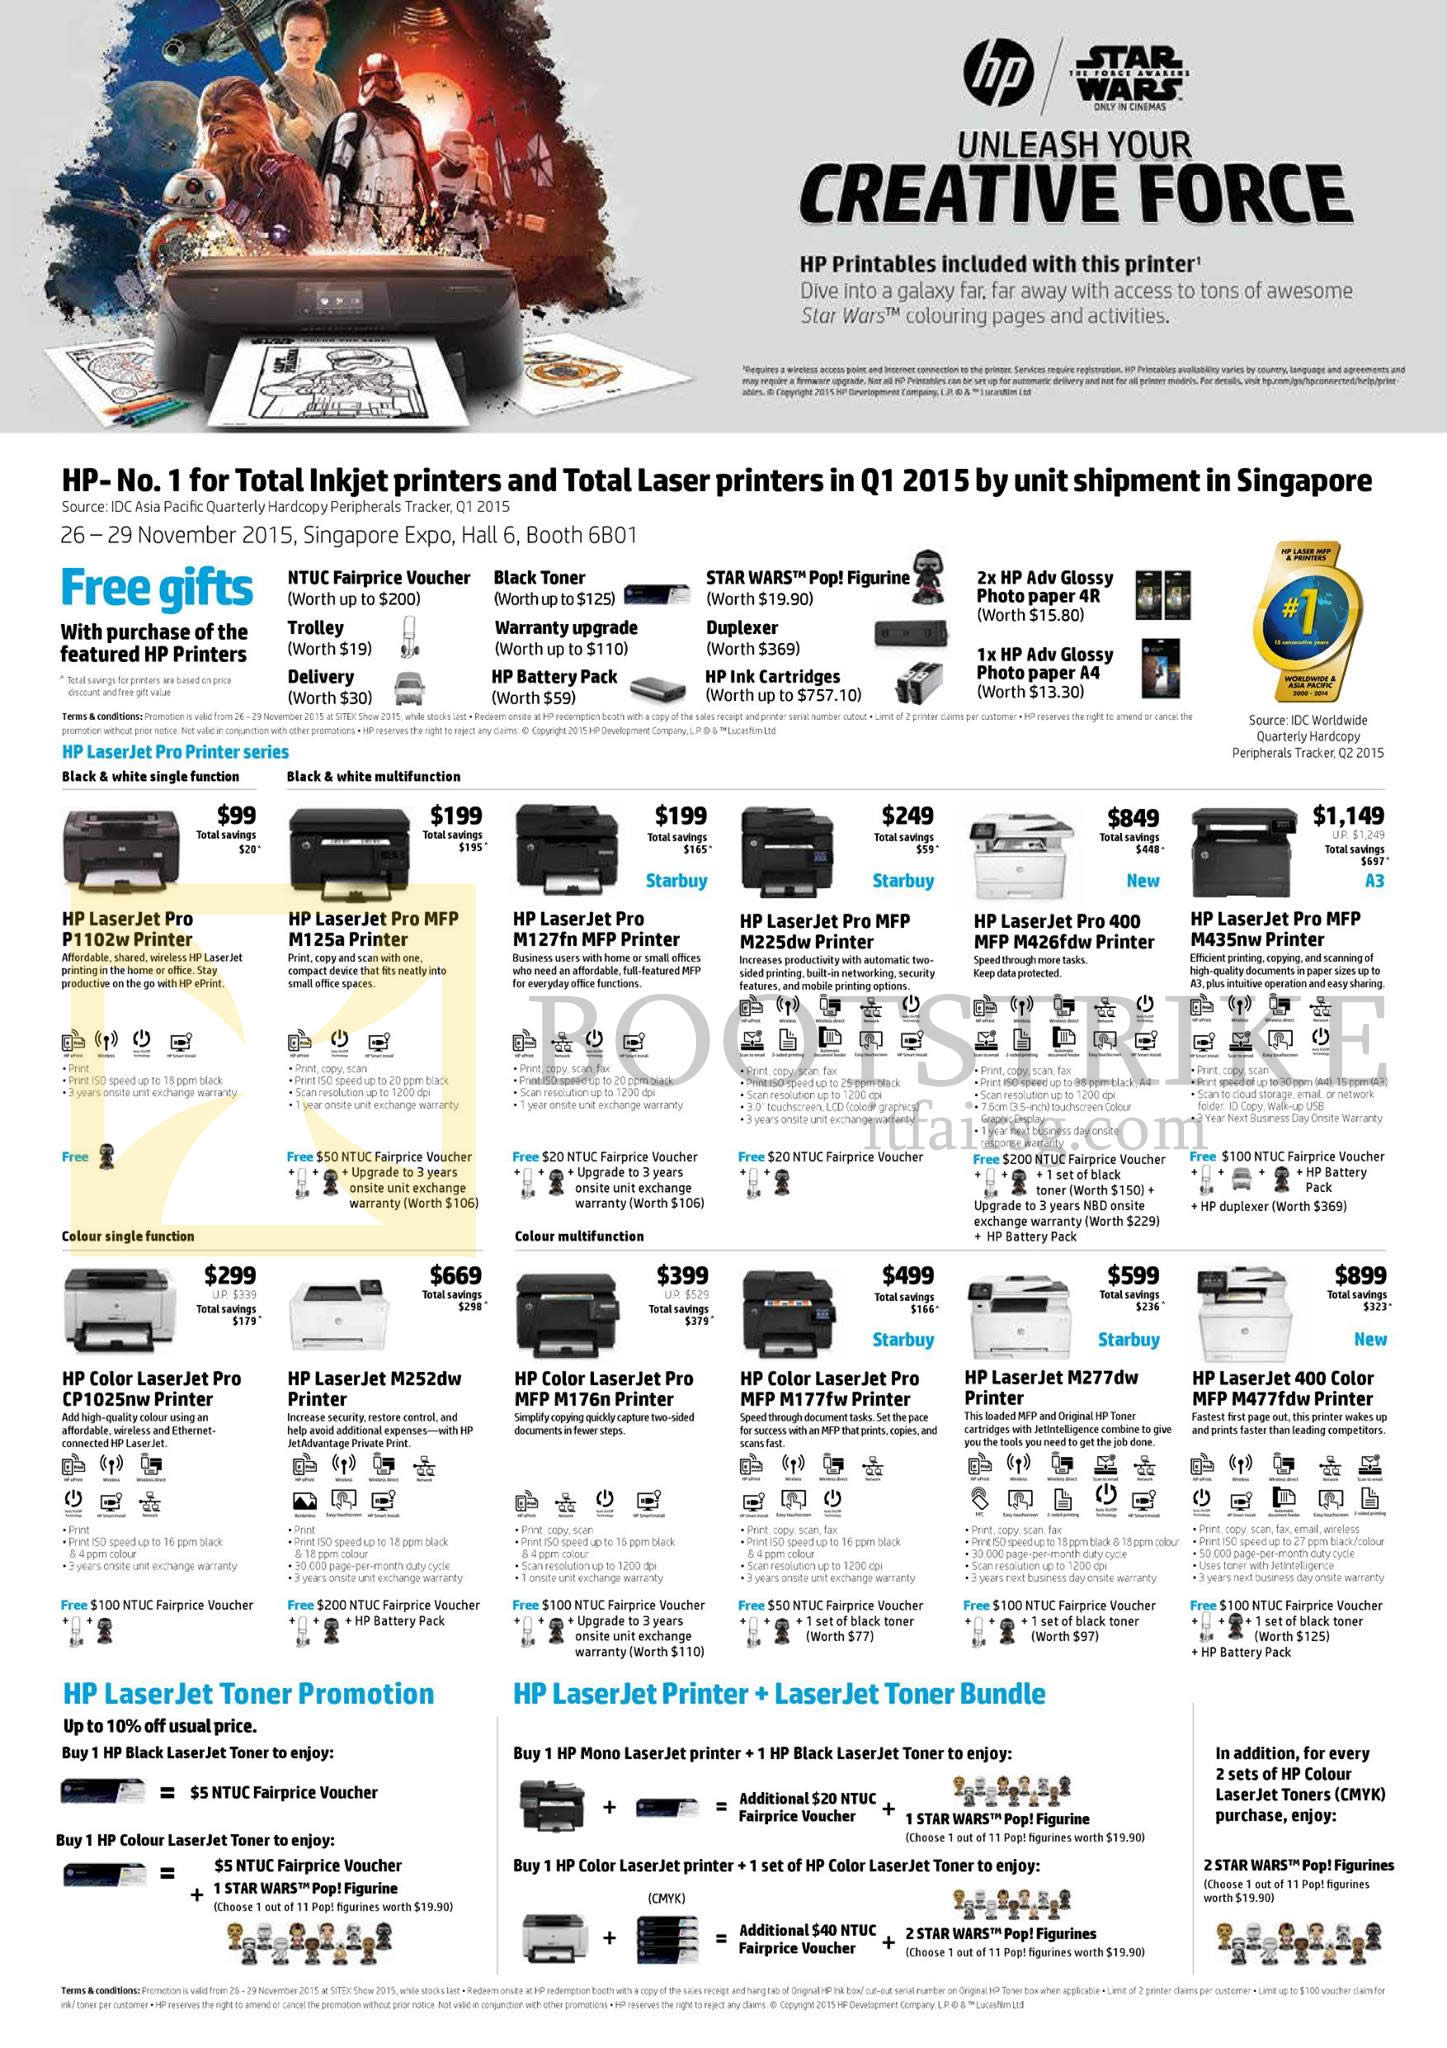 SITEX 2015 price list image brochure of HP Printers LaserJet Pro P1102w, M125a, M127fn, M225dw, M426fdw, M435nw, CP1025nw, M252dw, M176n, M177fw, M277dw